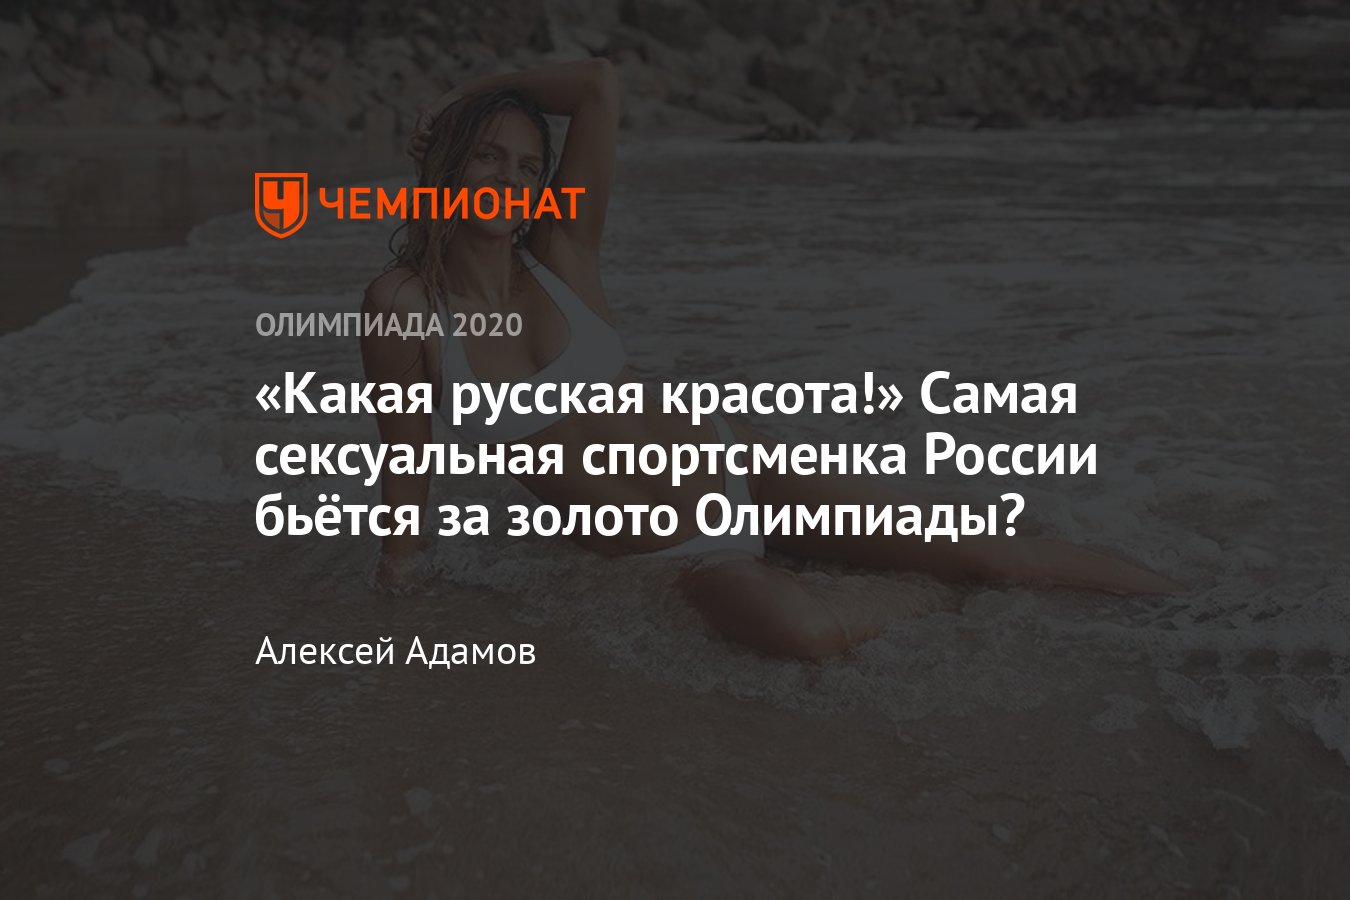 Самая сексуальная пловчиха России празднует юбилей. Фанаты в восторге от красавицы Анны